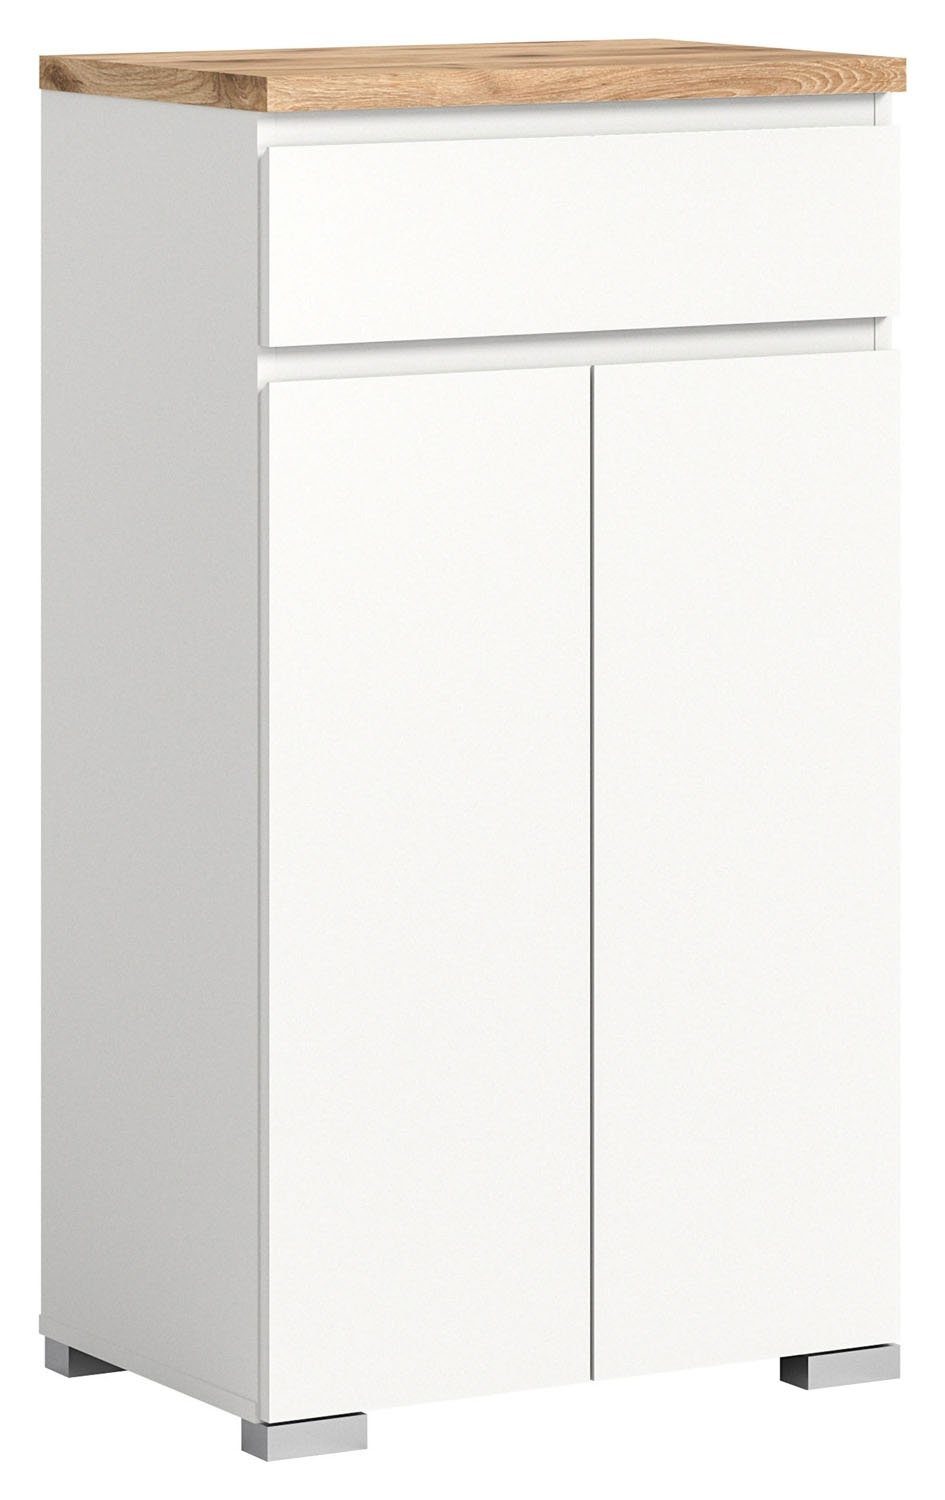 Kommode SHOELOVE, B 60 cm x H 109 cm, Weiß, Nox Eiche Dekor, 2 Türen, 1 Schublade